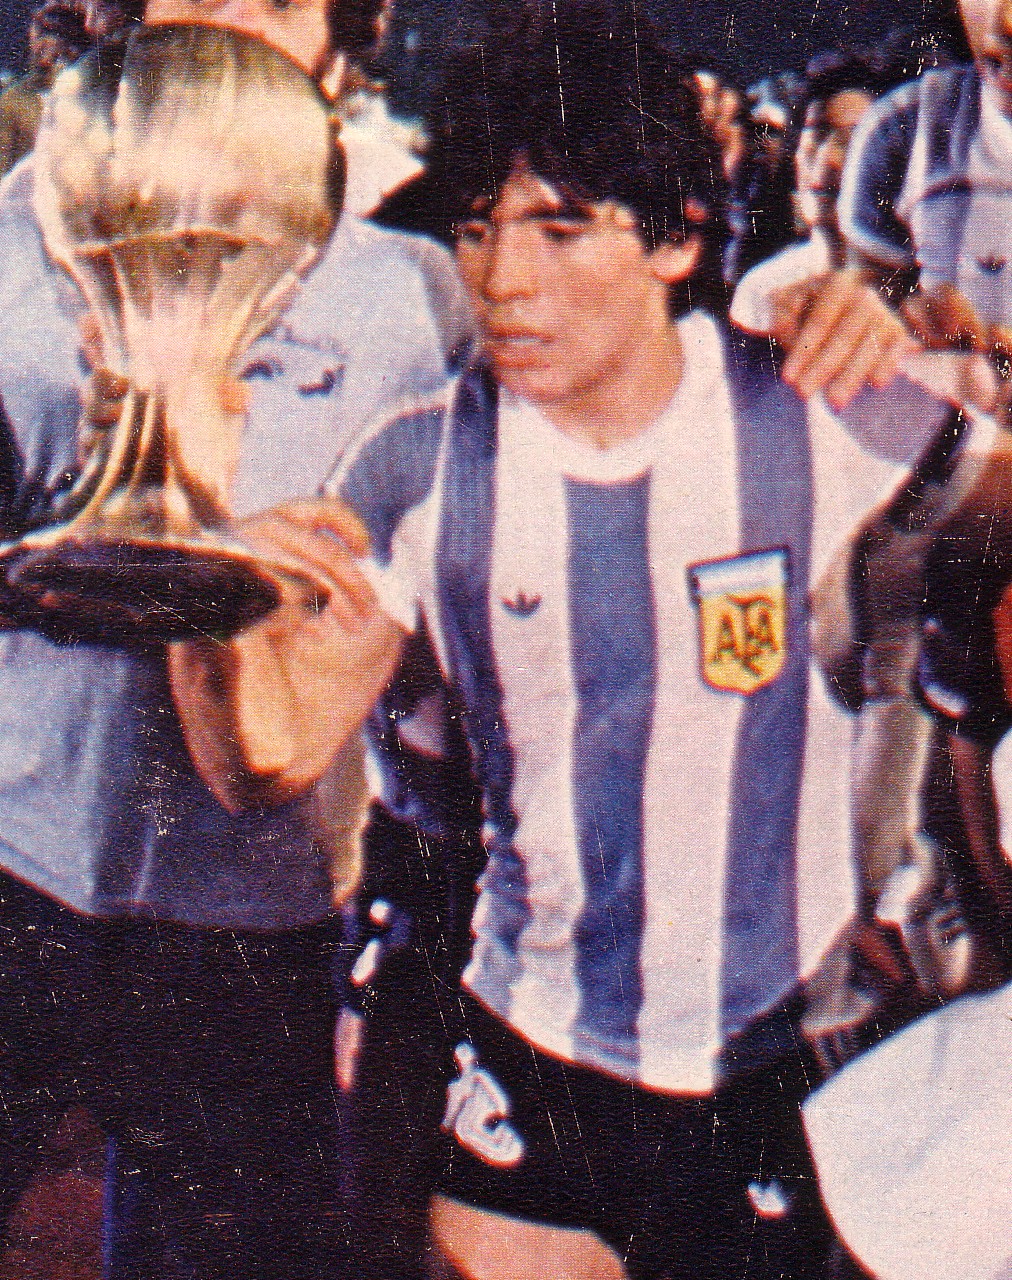 Argentina: Maradona, ex-jogador há 20 anos, em 20 momentos únicos, Esportes